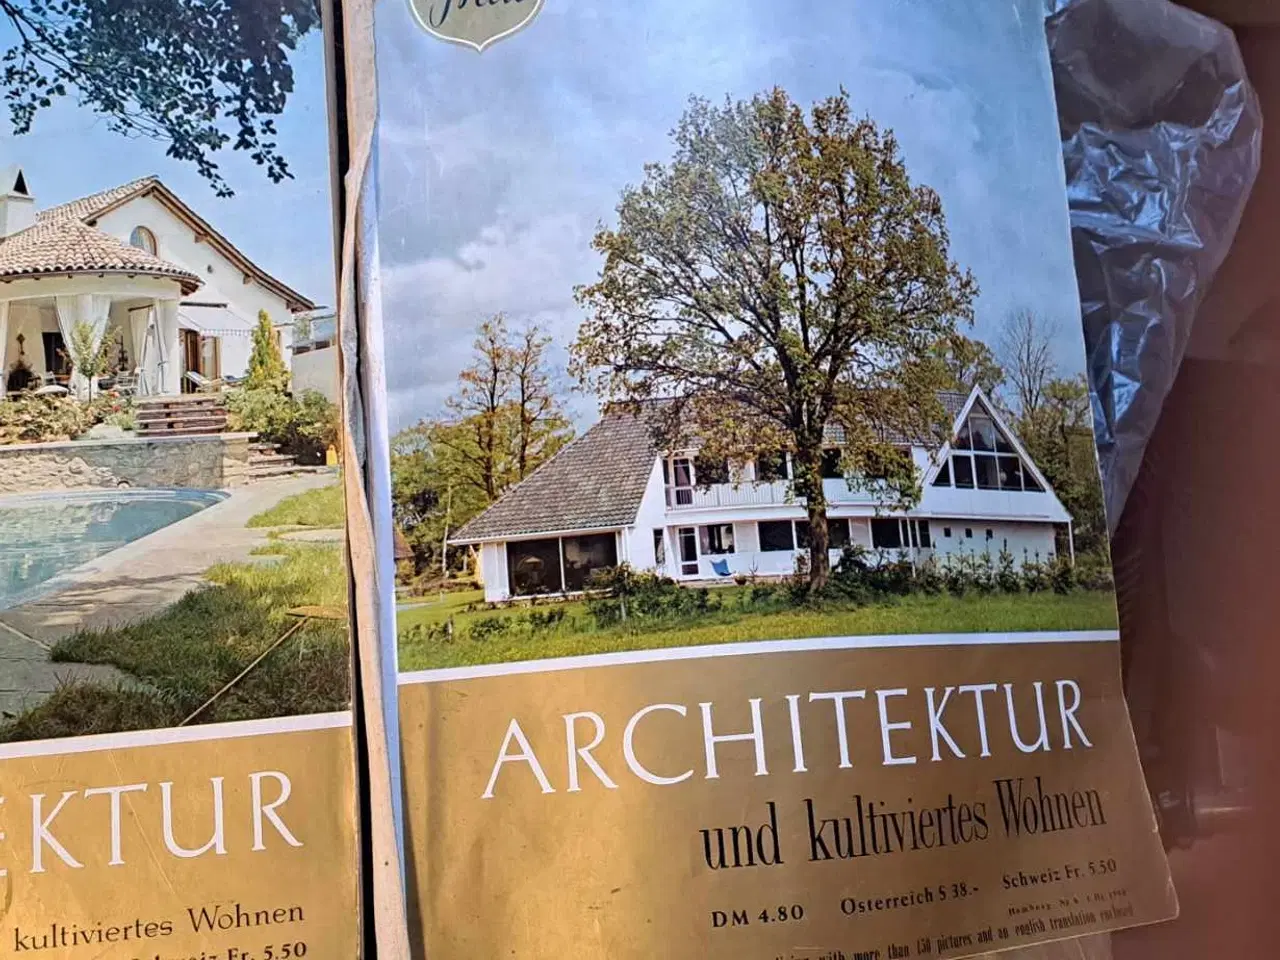 Billede 1 - 2 blade film und frau 1blad hedder architektur sön